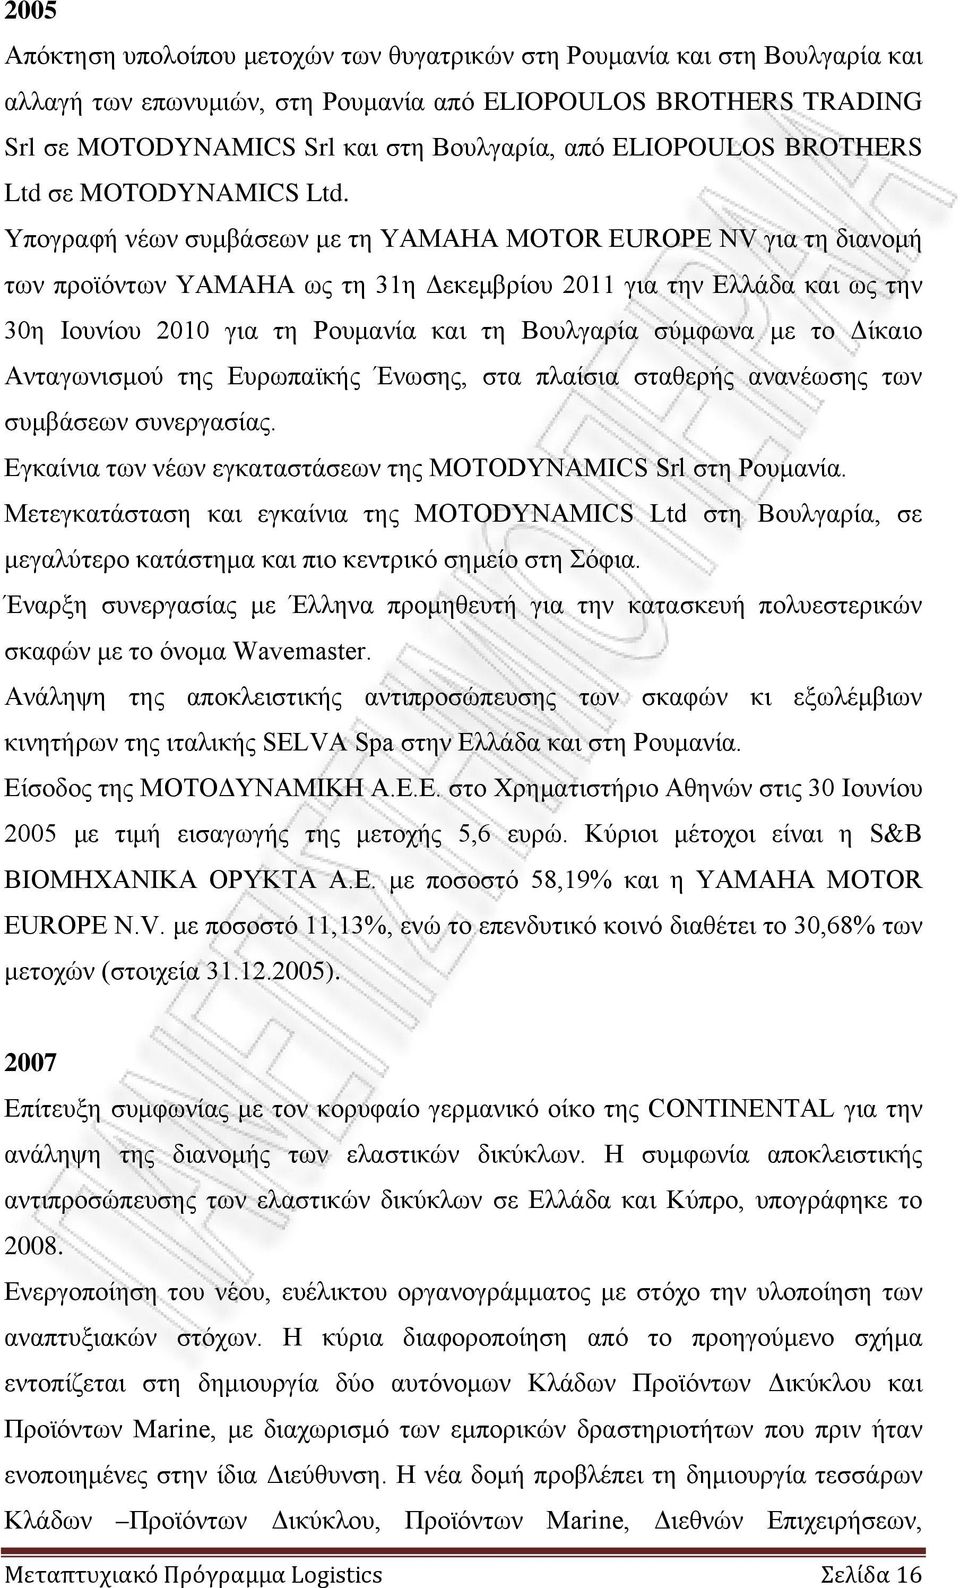 Υπογραφή νέων συμβάσεων με τη ΥΑΜΑΗΑ MOTOR EUROPE NV για τη διανομή των προϊόντων ΥΑΜΑΗΑ ως τη 31η Δεκεμβρίου 2011 για την Ελλάδα και ως την 30η Ιουνίου 2010 για τη Ρουμανία και τη Βουλγαρία σύμφωνα